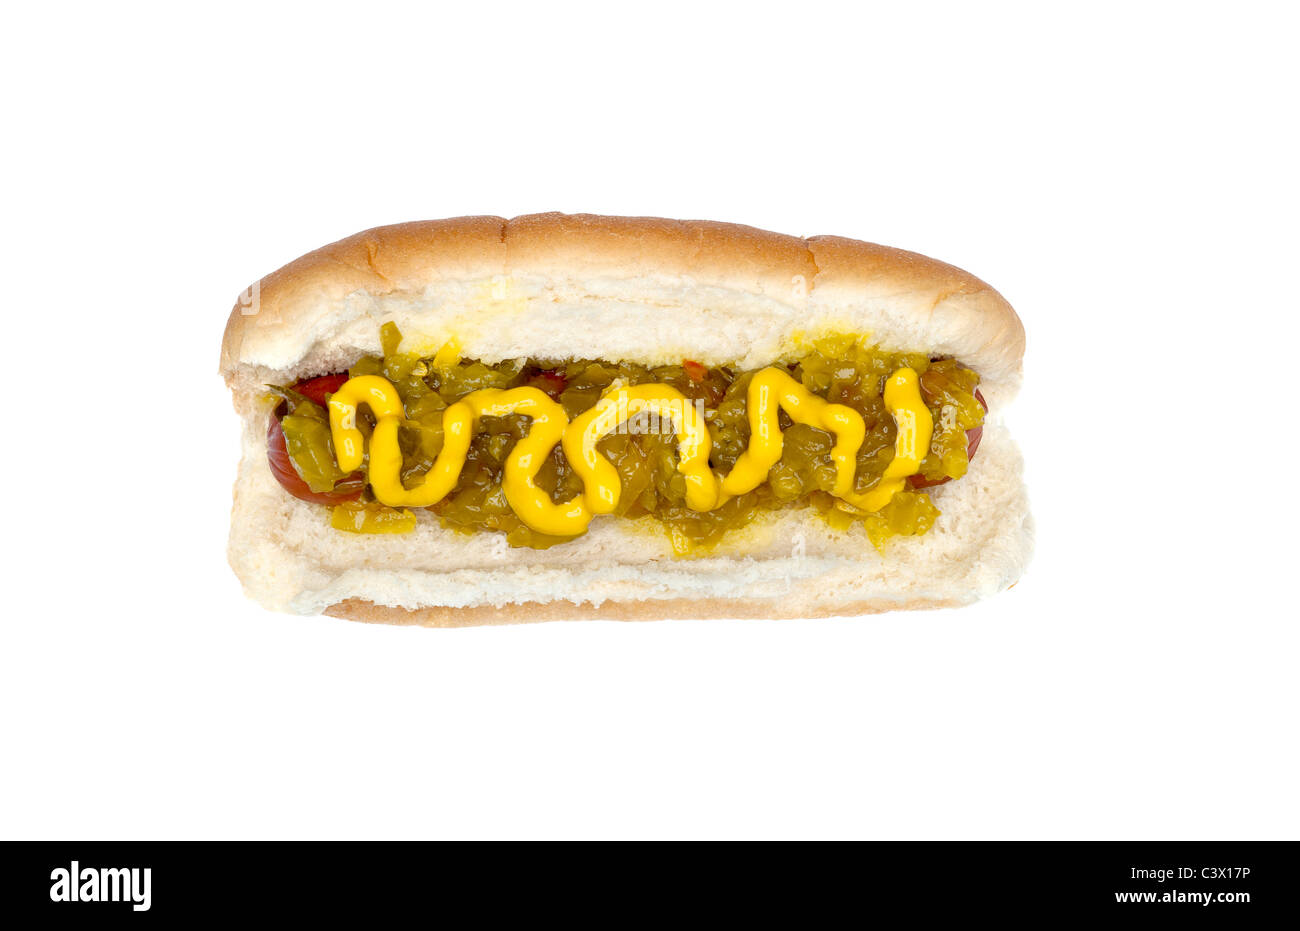 Un hot-dog fraichement grillés avec de la moutarde et de la relish Banque D'Images